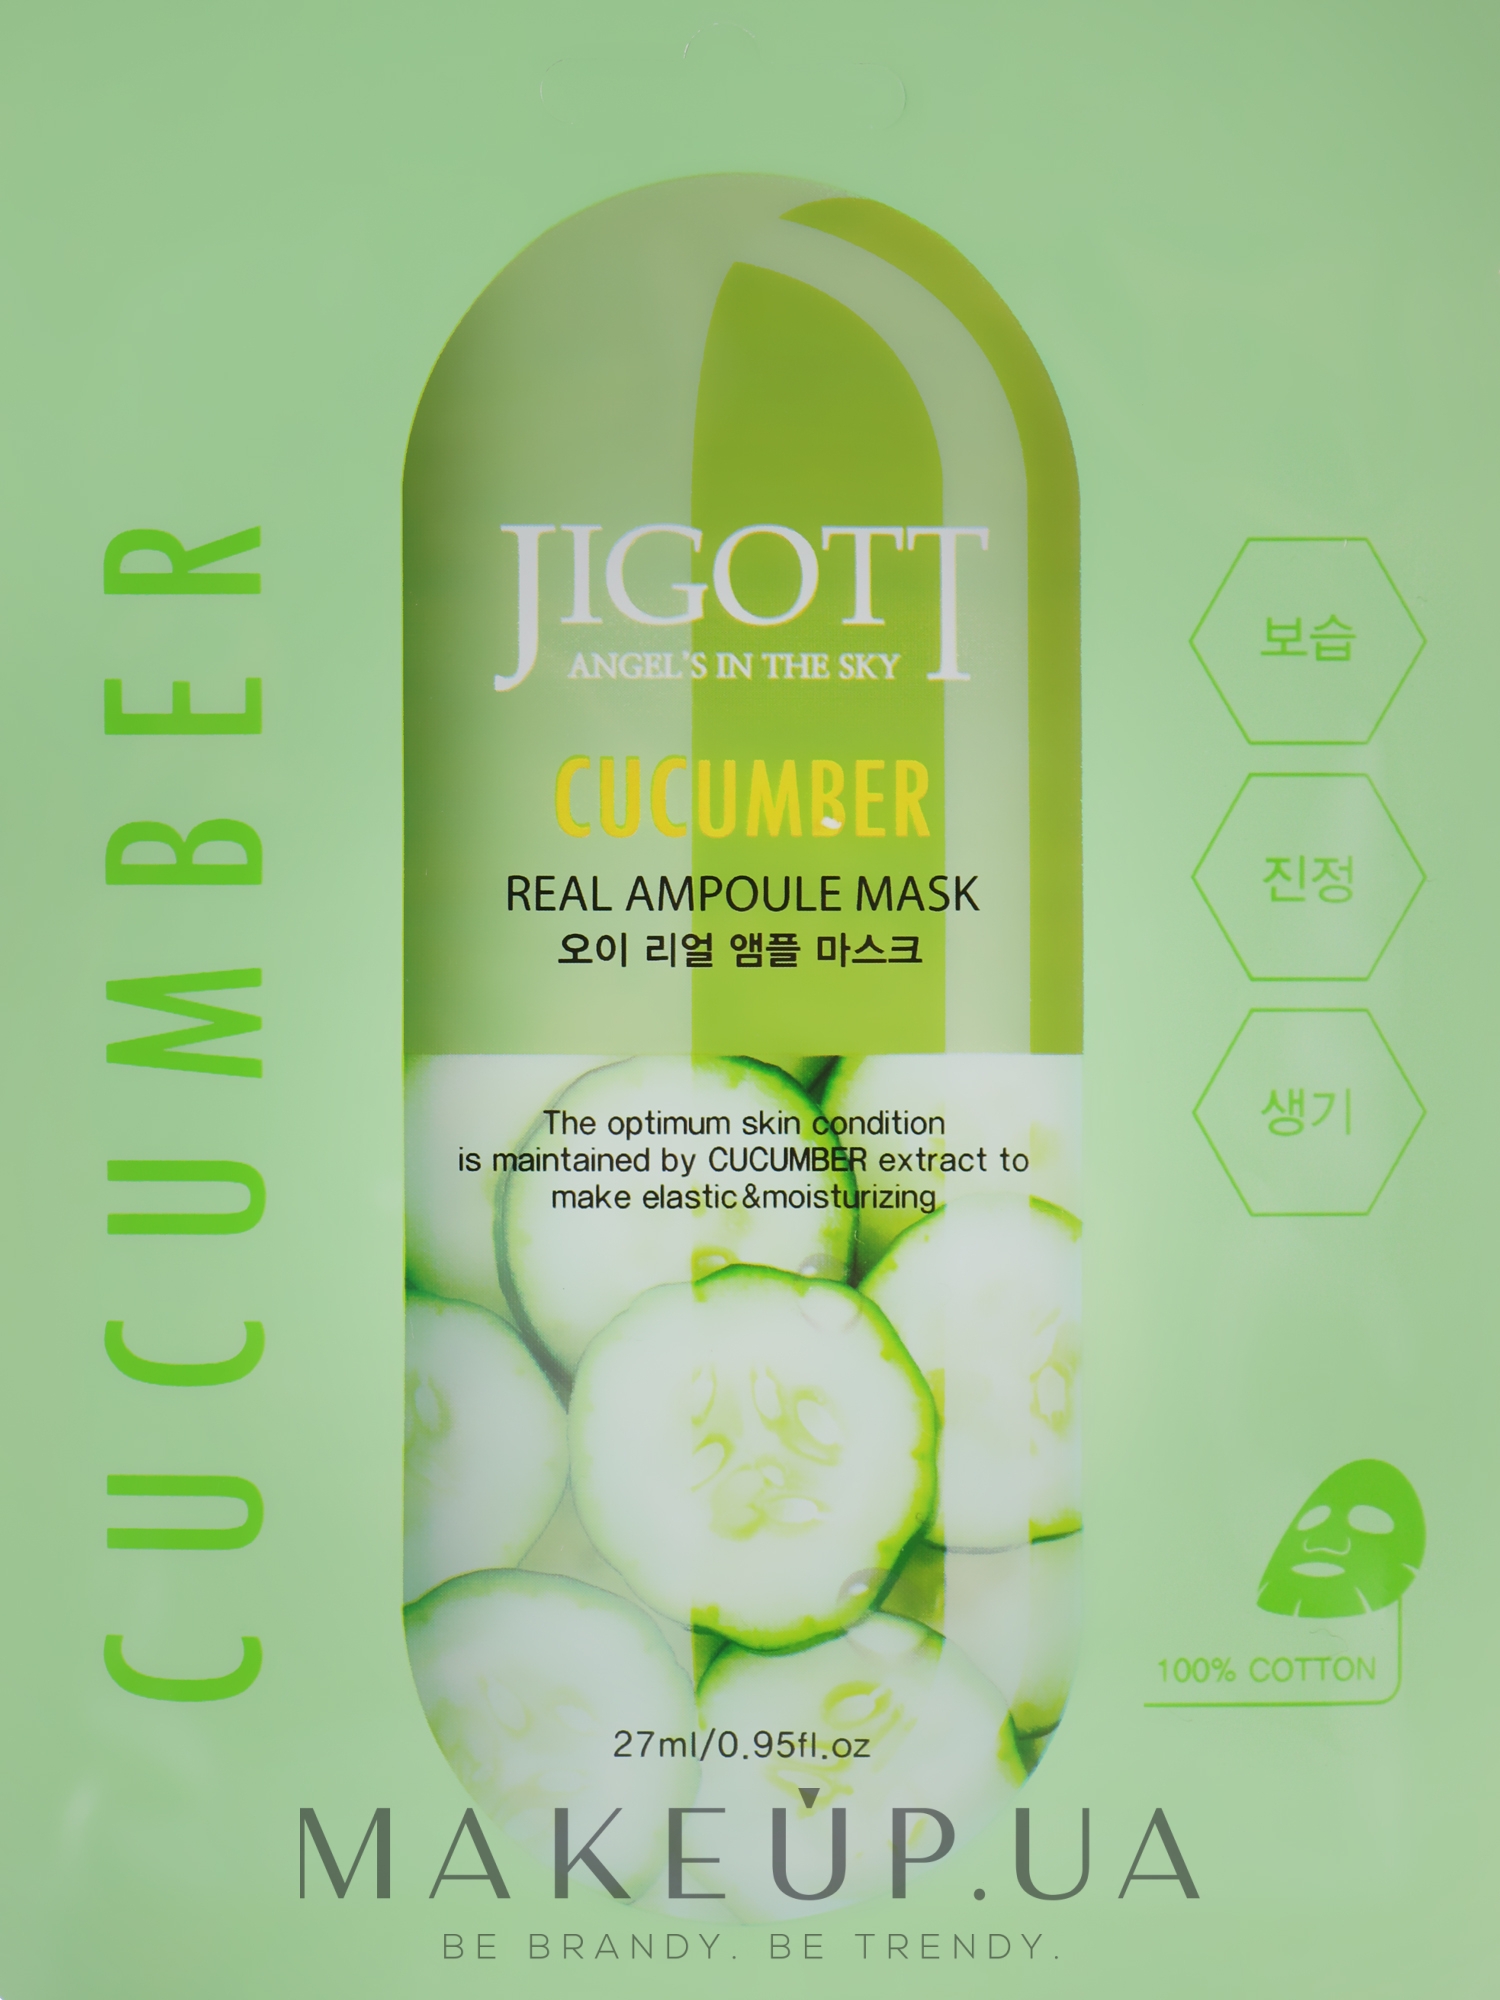 Ампульная маска "Огурец" - Jigott Cucumber Real Ampoule Mask — фото 27ml